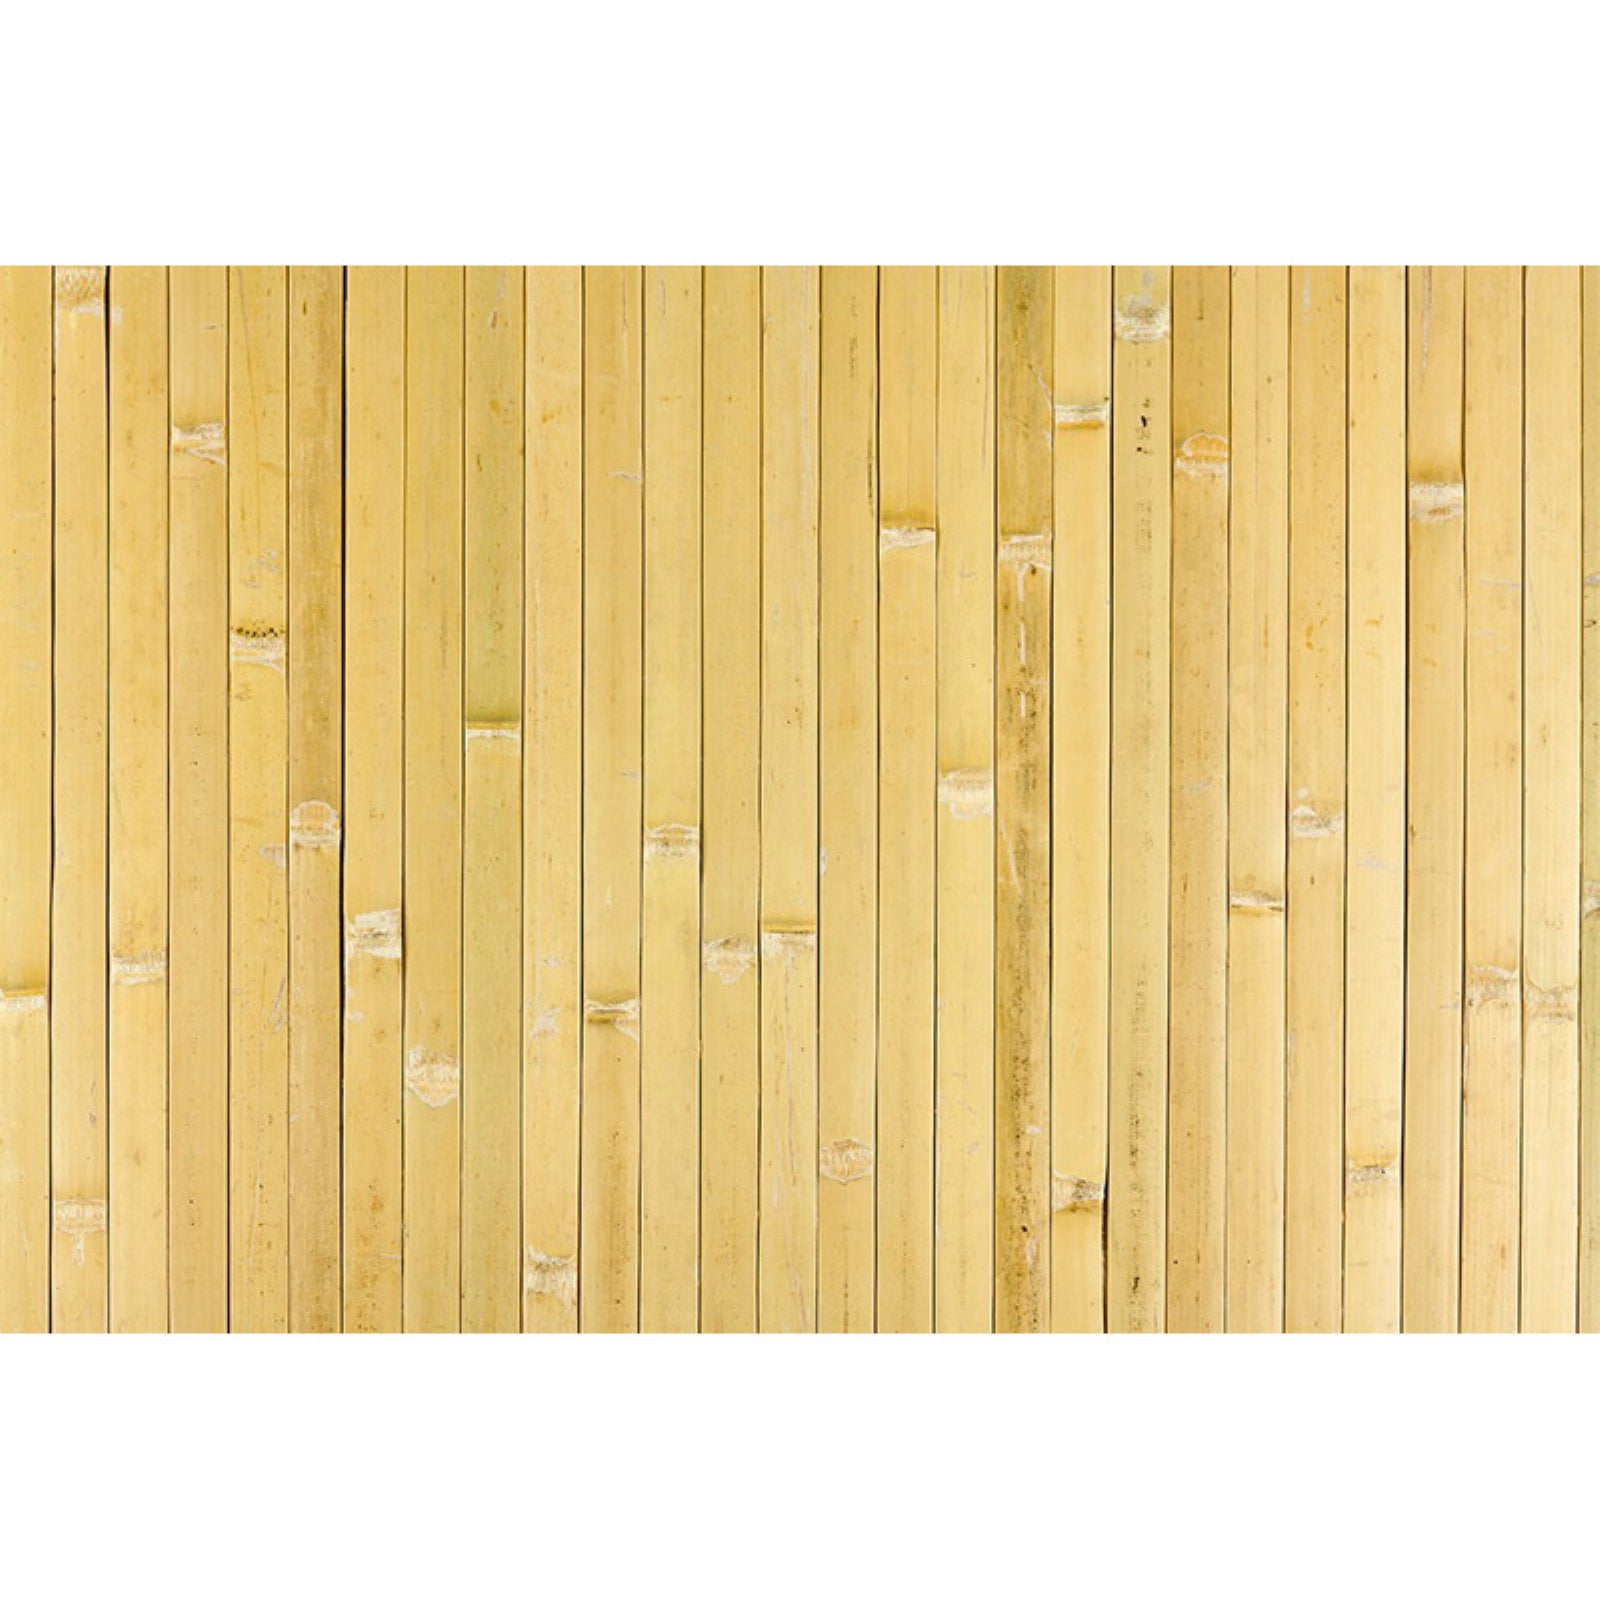 Beadboard Paneling, Ridge Pine Wall Paneling